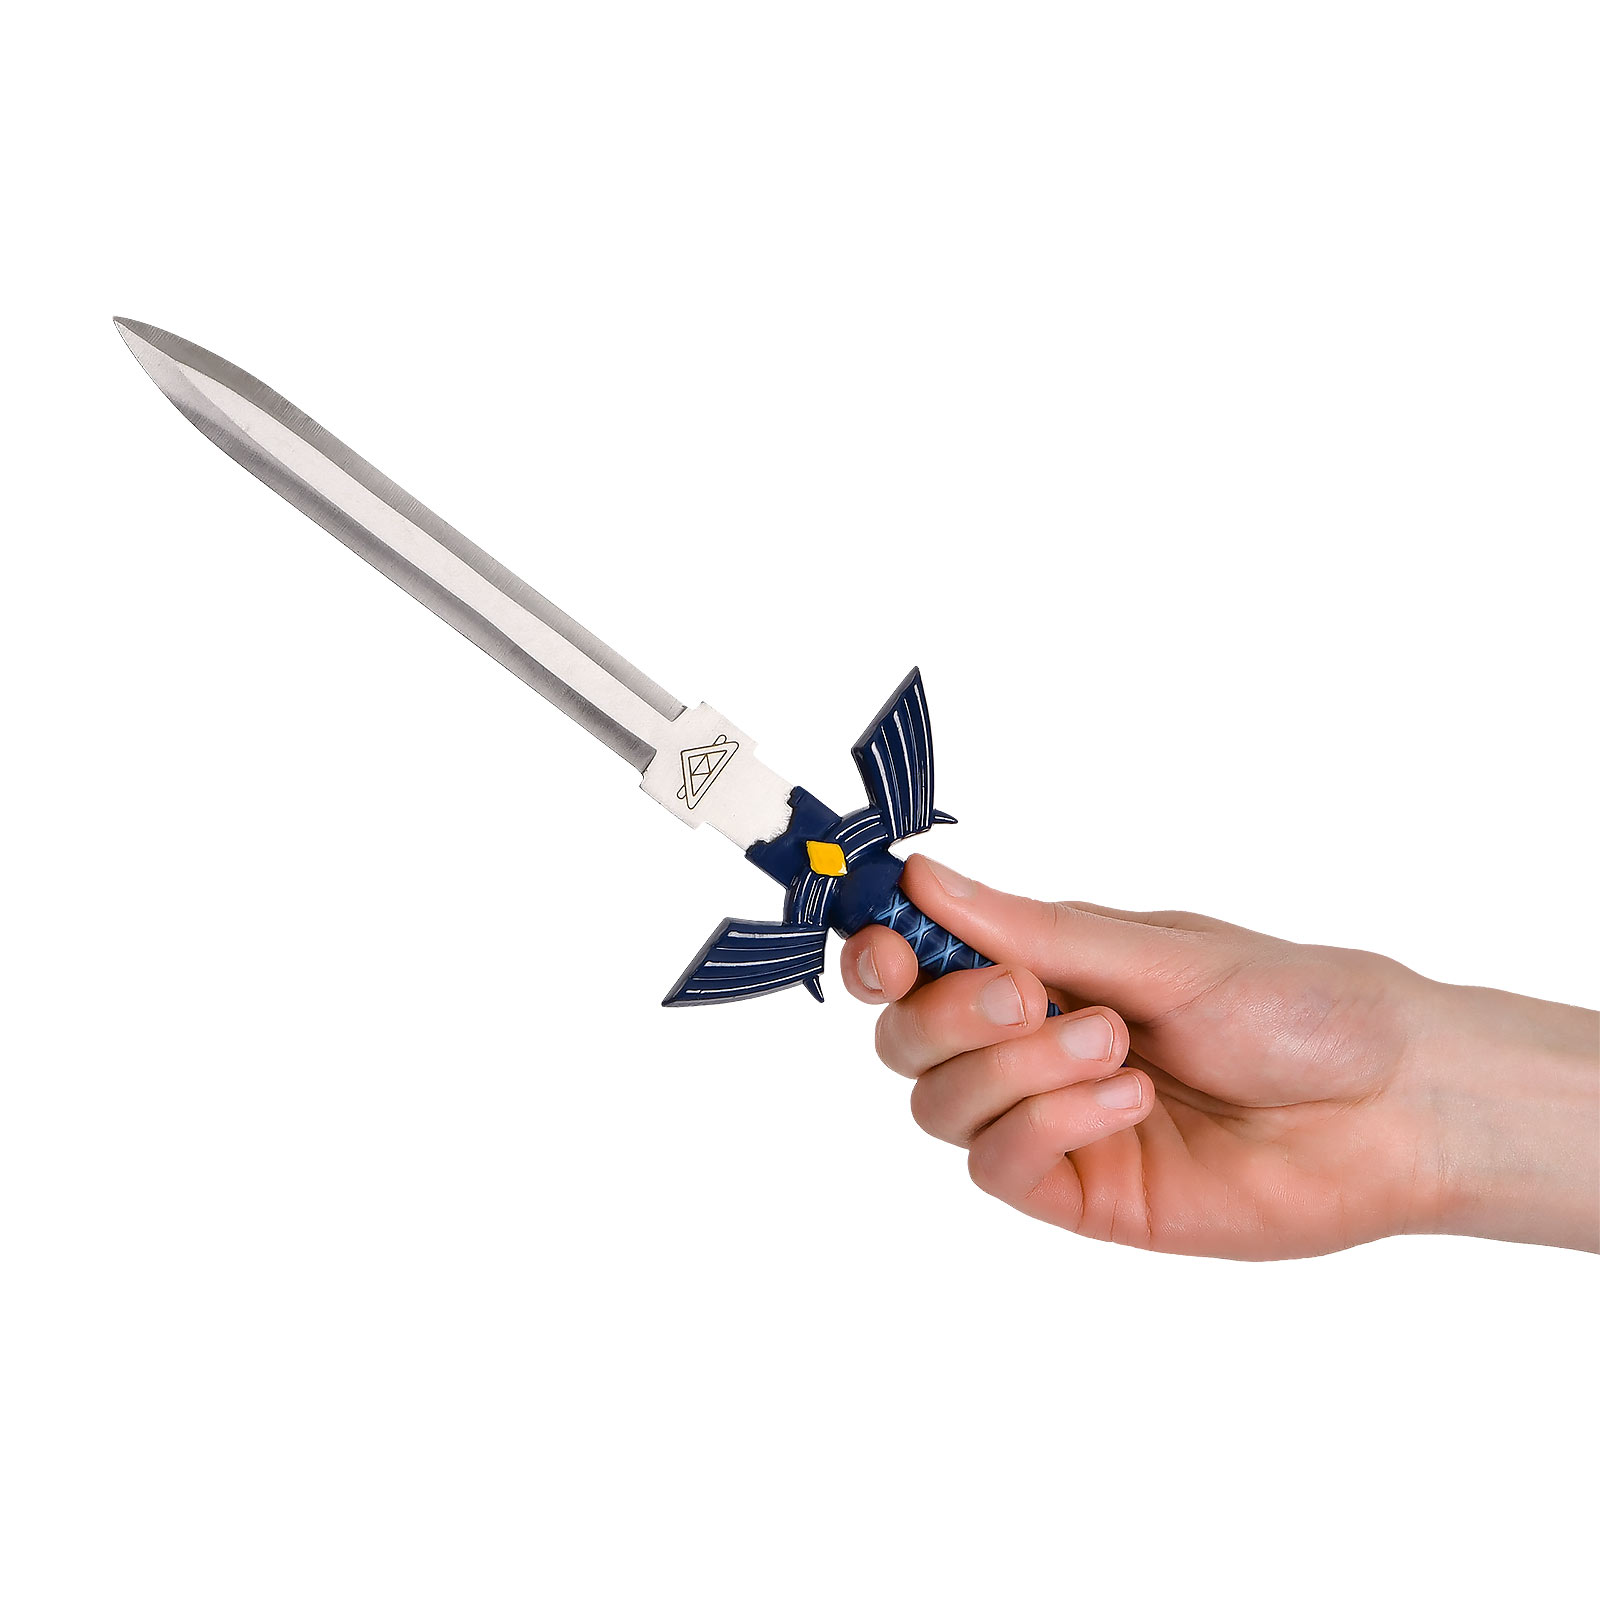 Meesterzwaard Miniatuur Replica met Schede voor Zelda Fans